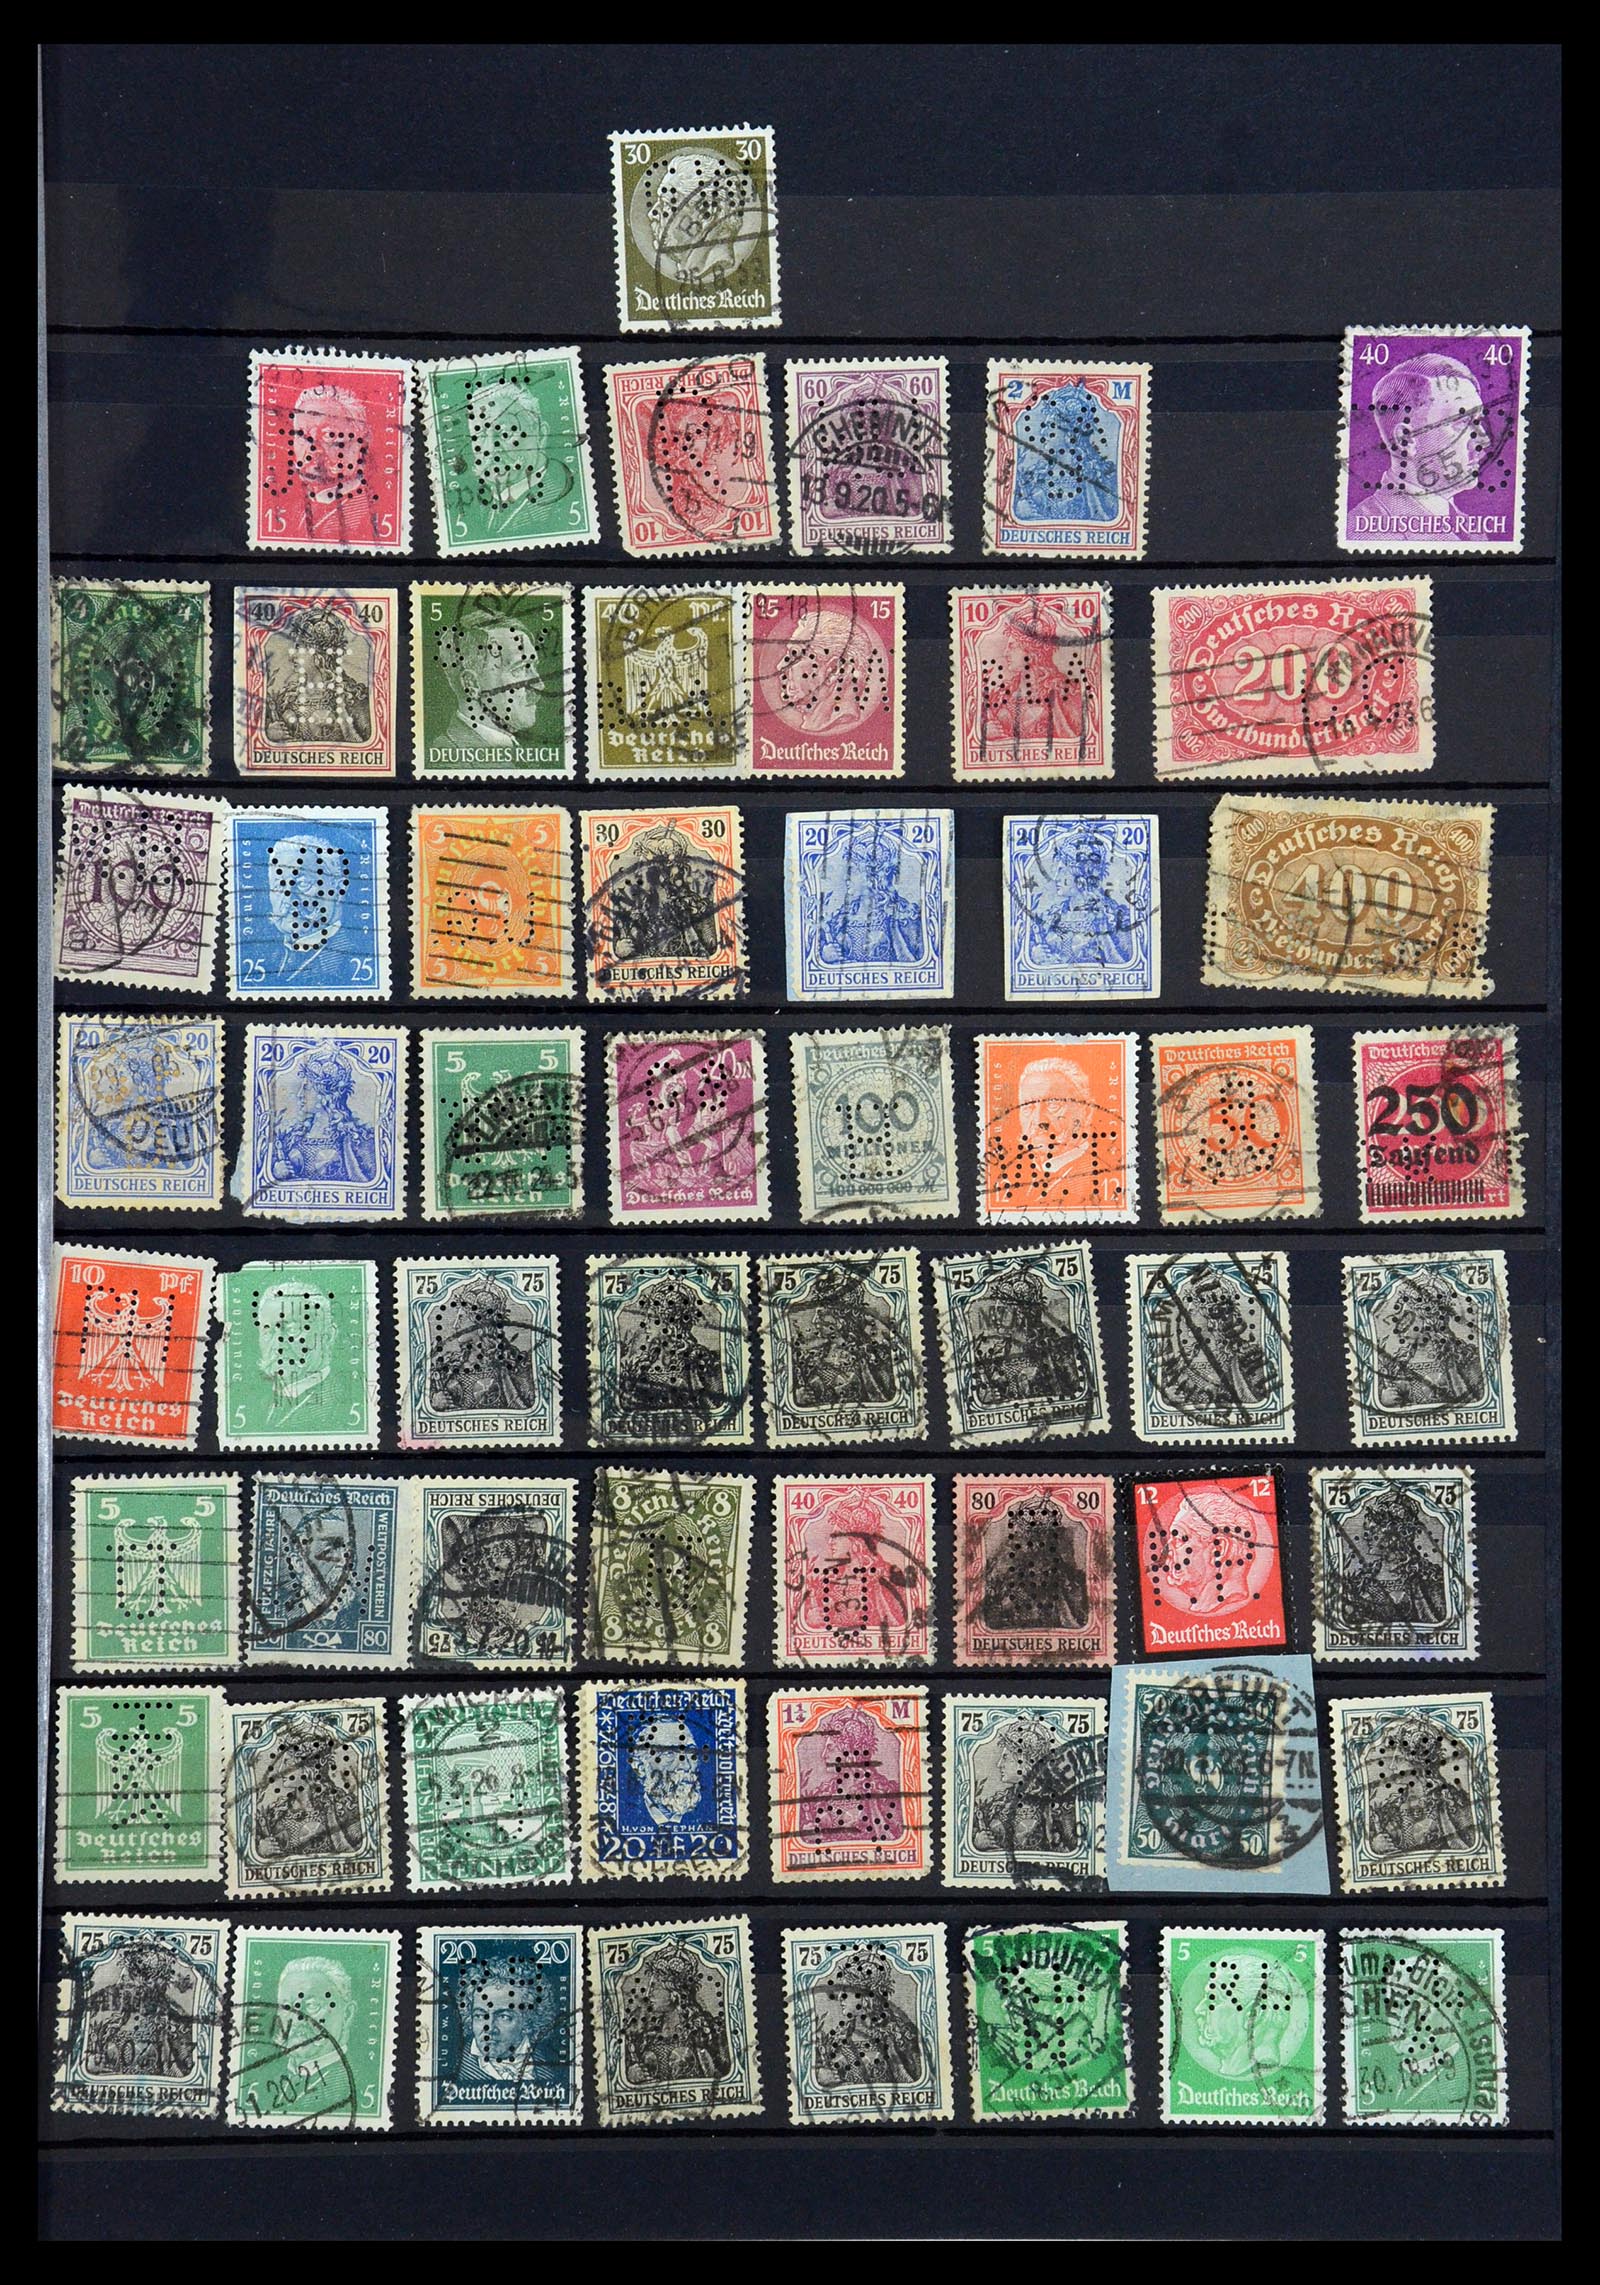 35183 037 - Stamp Collection 35183 German Reich perfins 1880-1945.